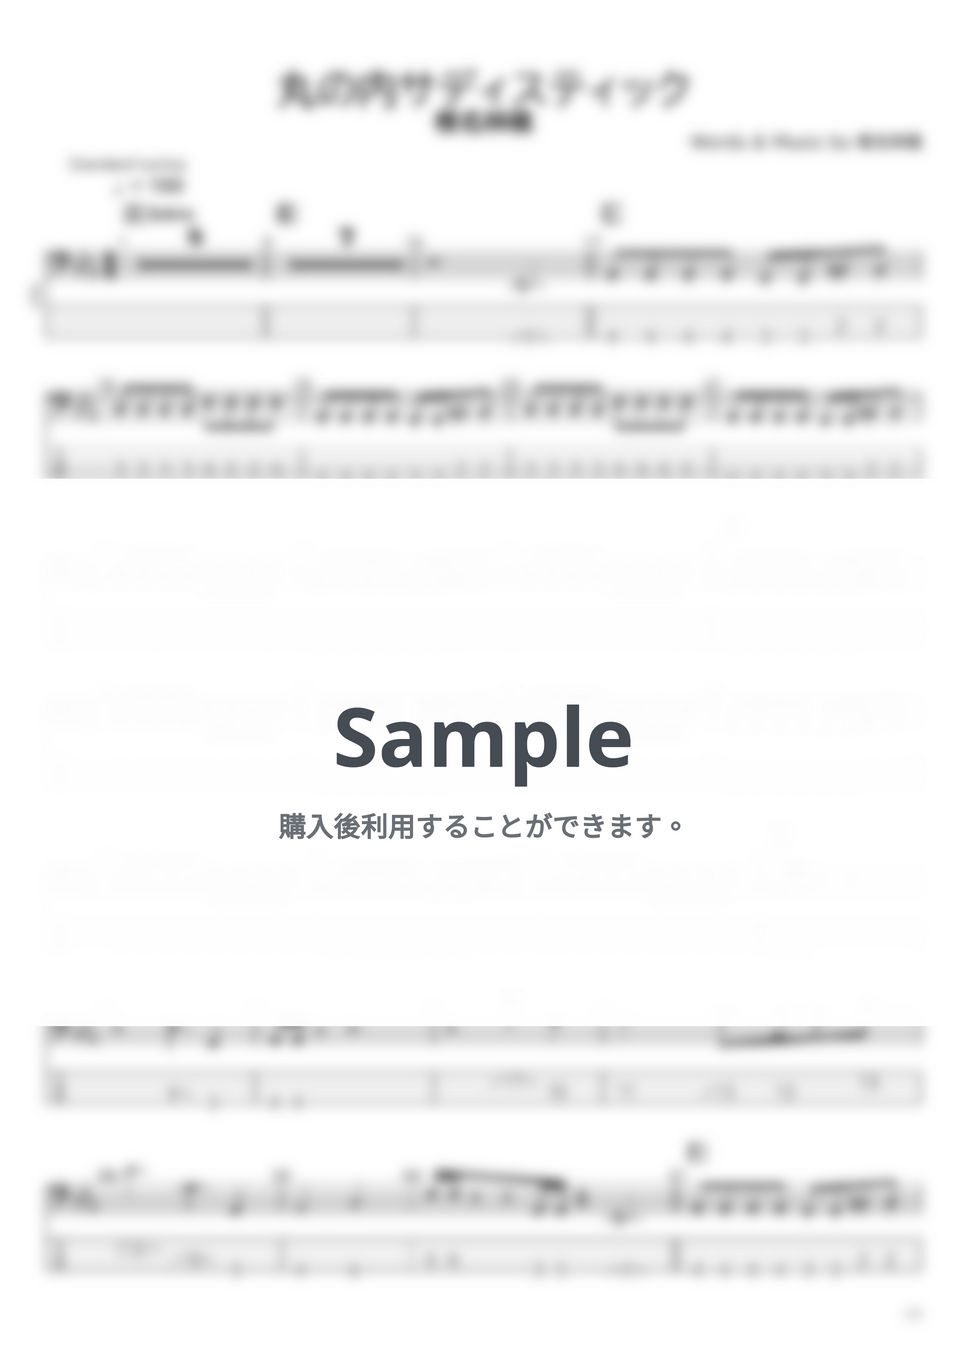 椎名 林檎 - 椎名 林檎 ベースTAB譜面 10曲セット集Ⅰ by たぶべー